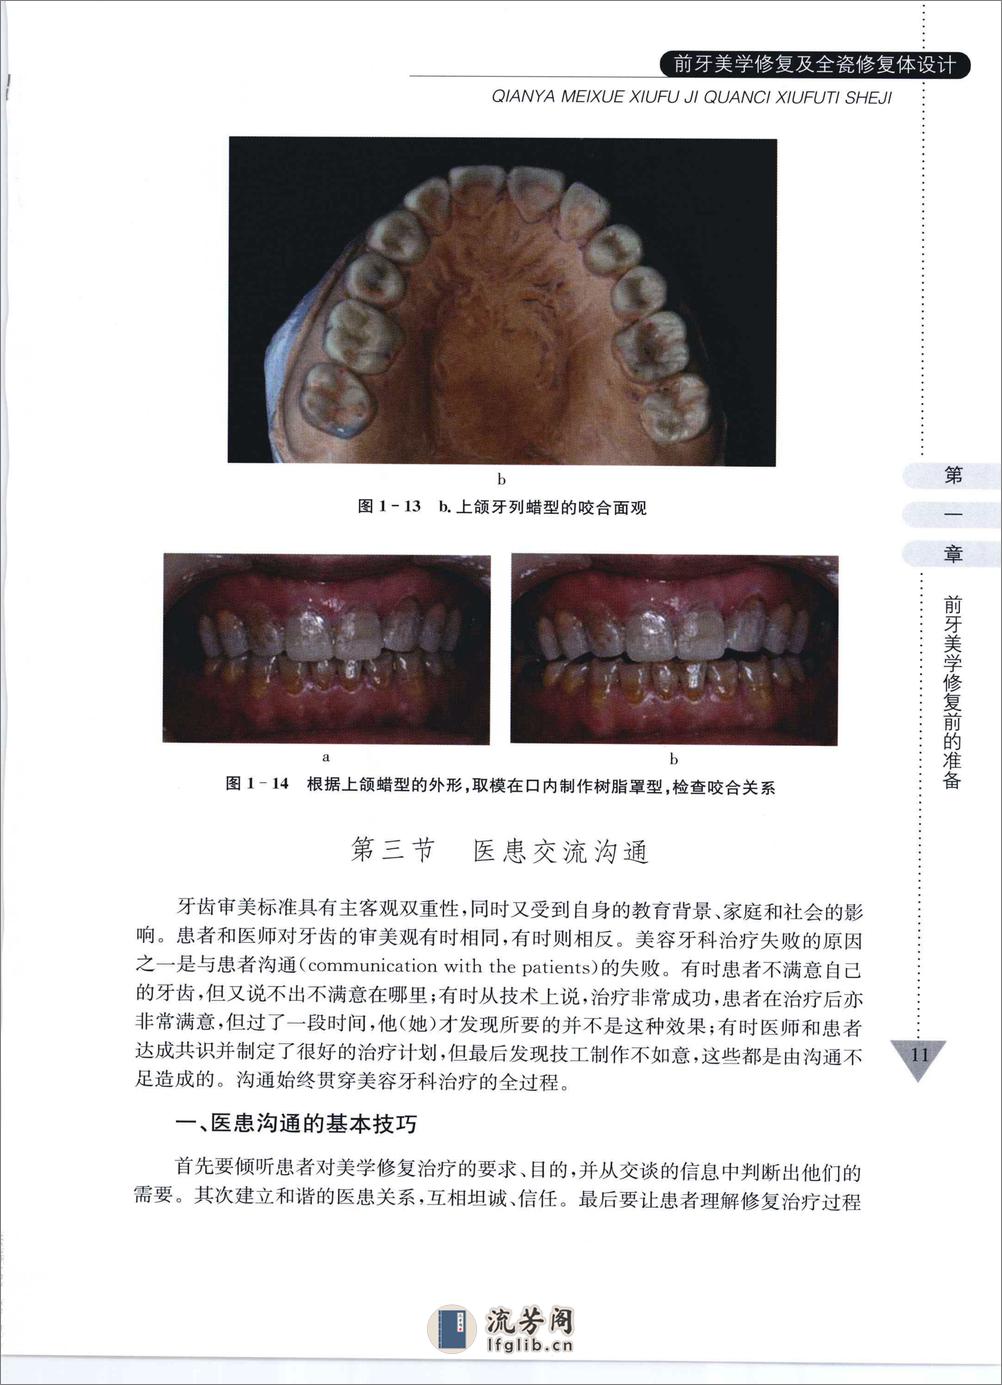 前牙美学修复及全瓷修复体设计 - 第19页预览图